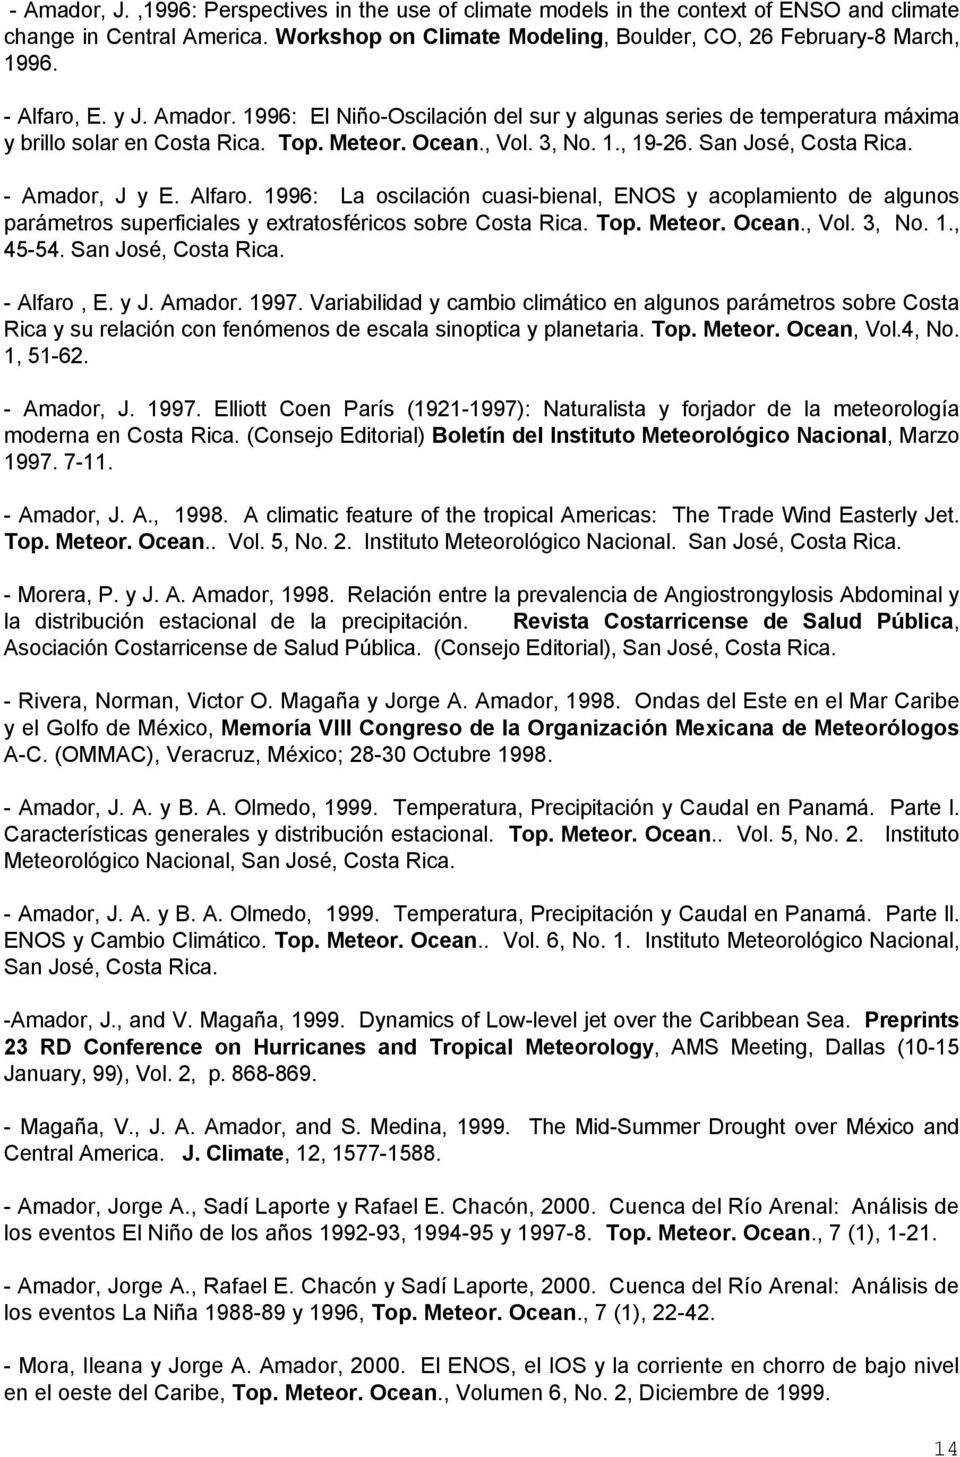 - Amador, J y E. Alfaro. 1996: La oscilación cuasi-bienal, ENOS y acoplamiento de algunos parámetros superficiales y extratosféricos sobre Costa Rica. Top. Meteor. Ocean., Vol. 3, No. 1., 45-54.